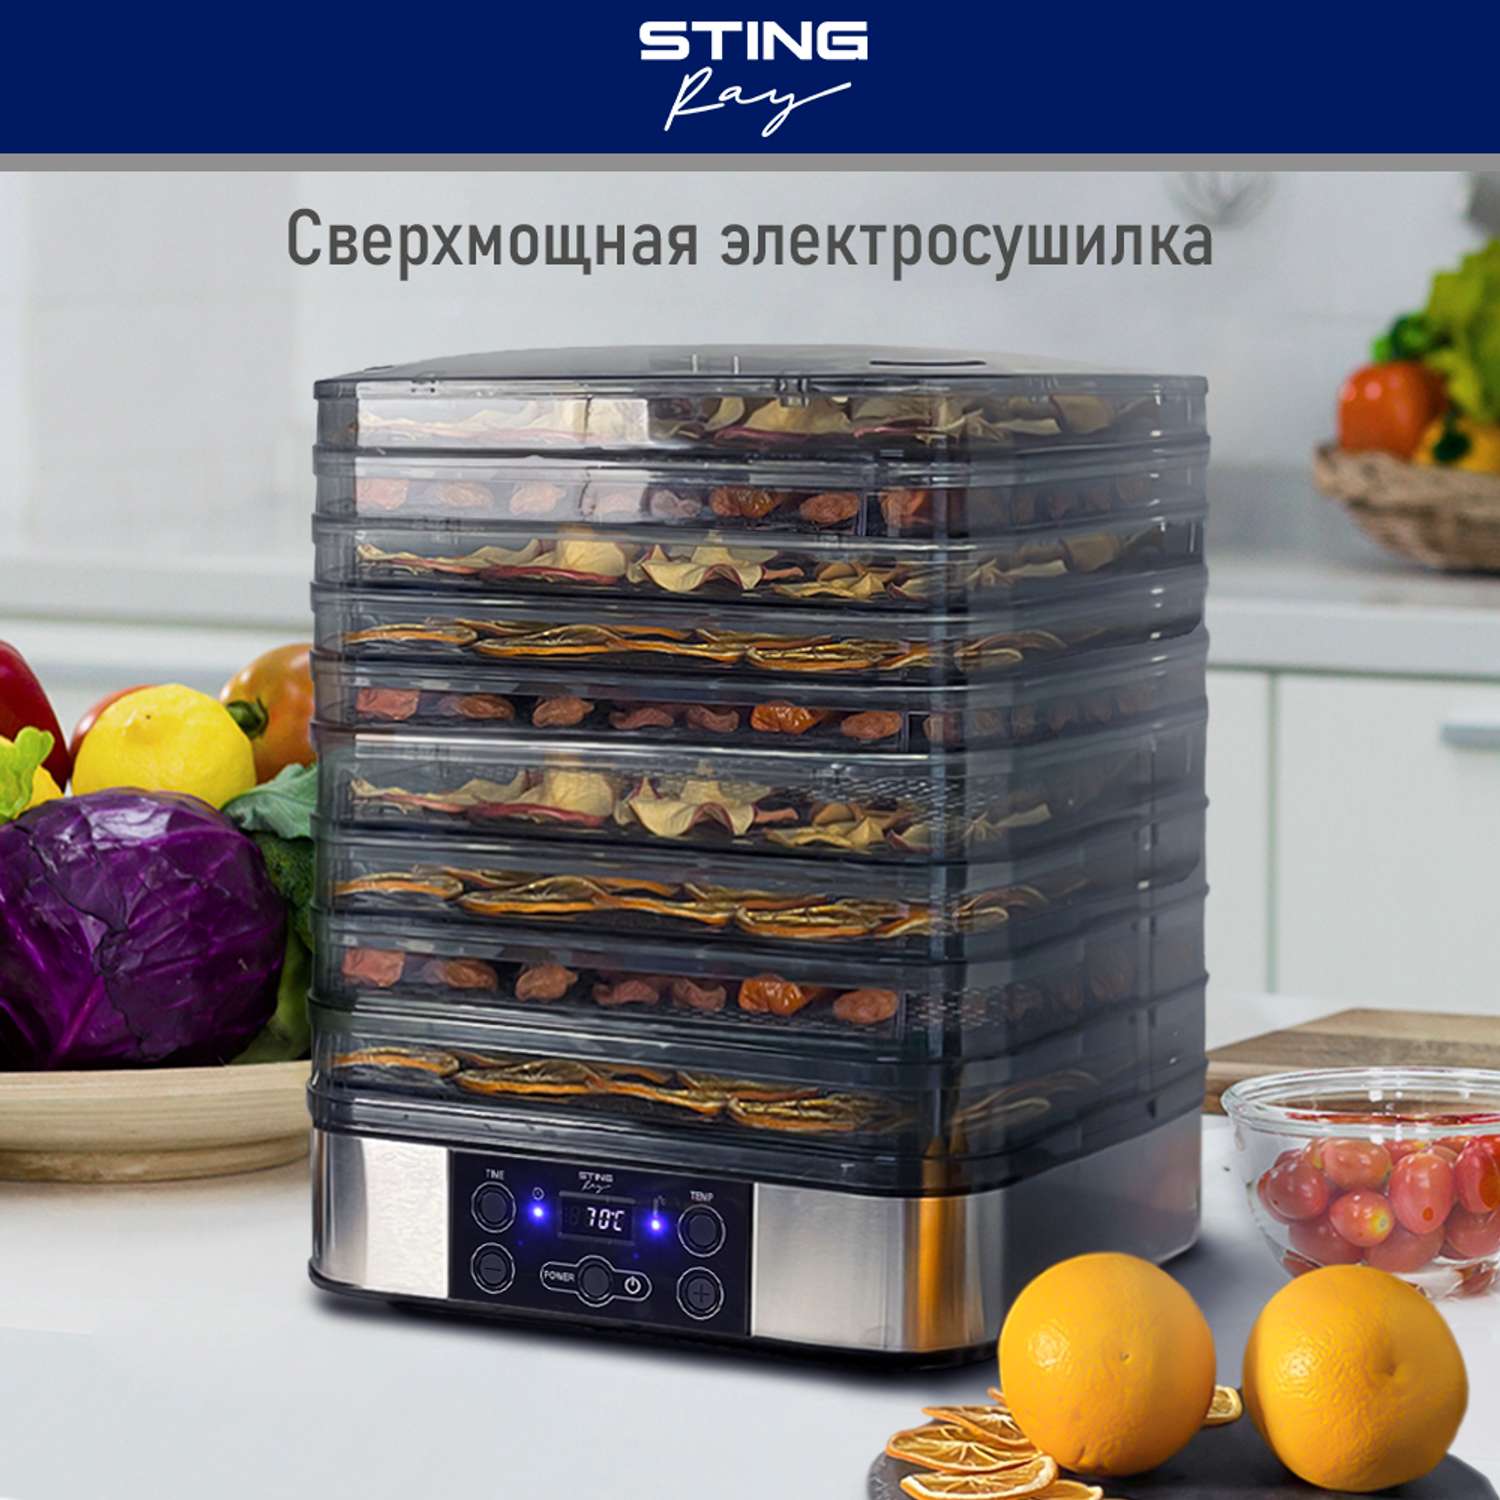 Сушилки для фруктов в Москве, купить сушилку для овощей и фруктов, цены в интернет-магазине